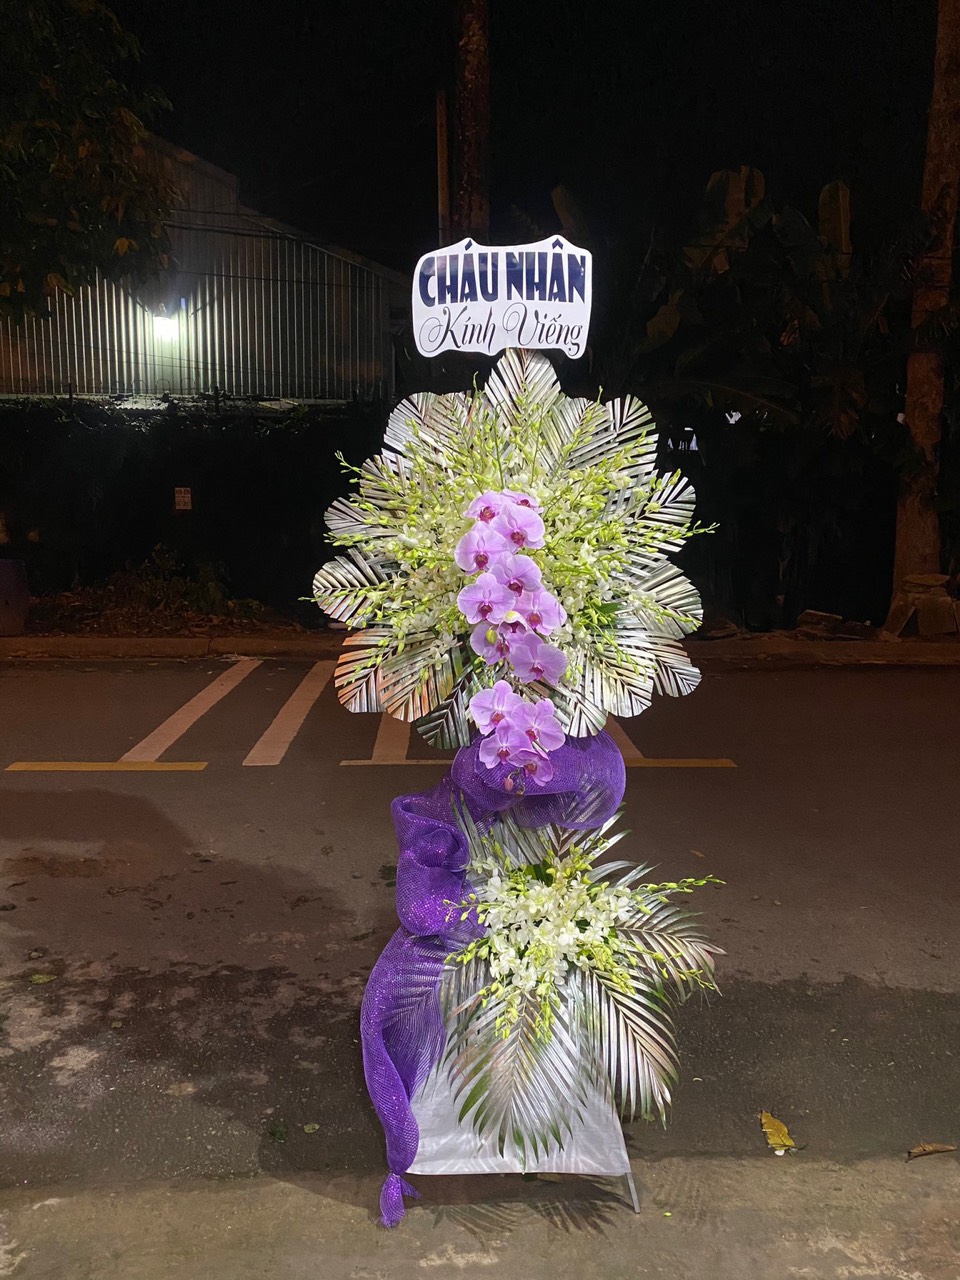 Hoa tươi - Quỳnh Flower - Điện Hoa Online Trảng Bom - Đồng Nai